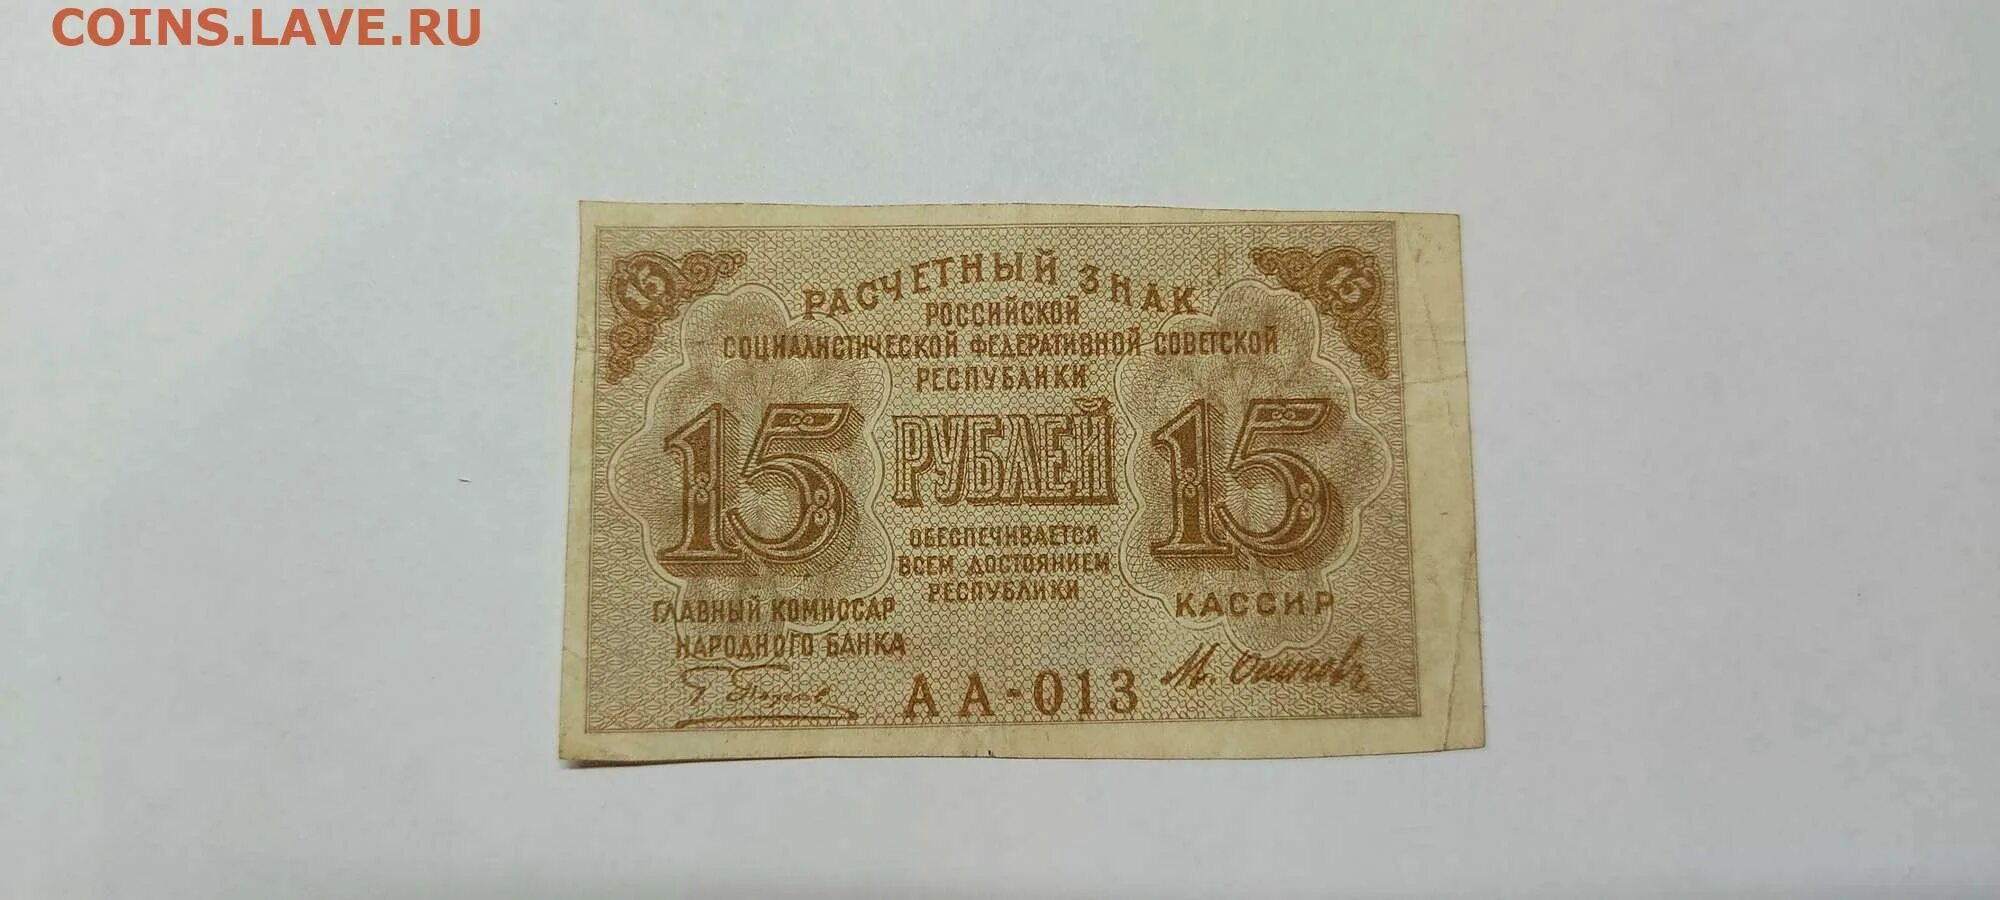 Расчетный знак 15 рублей. Расчетный знак достоинством 15 рубля. Фото денег расчетные знаки 1919 10000. Язычок 15 рублей.